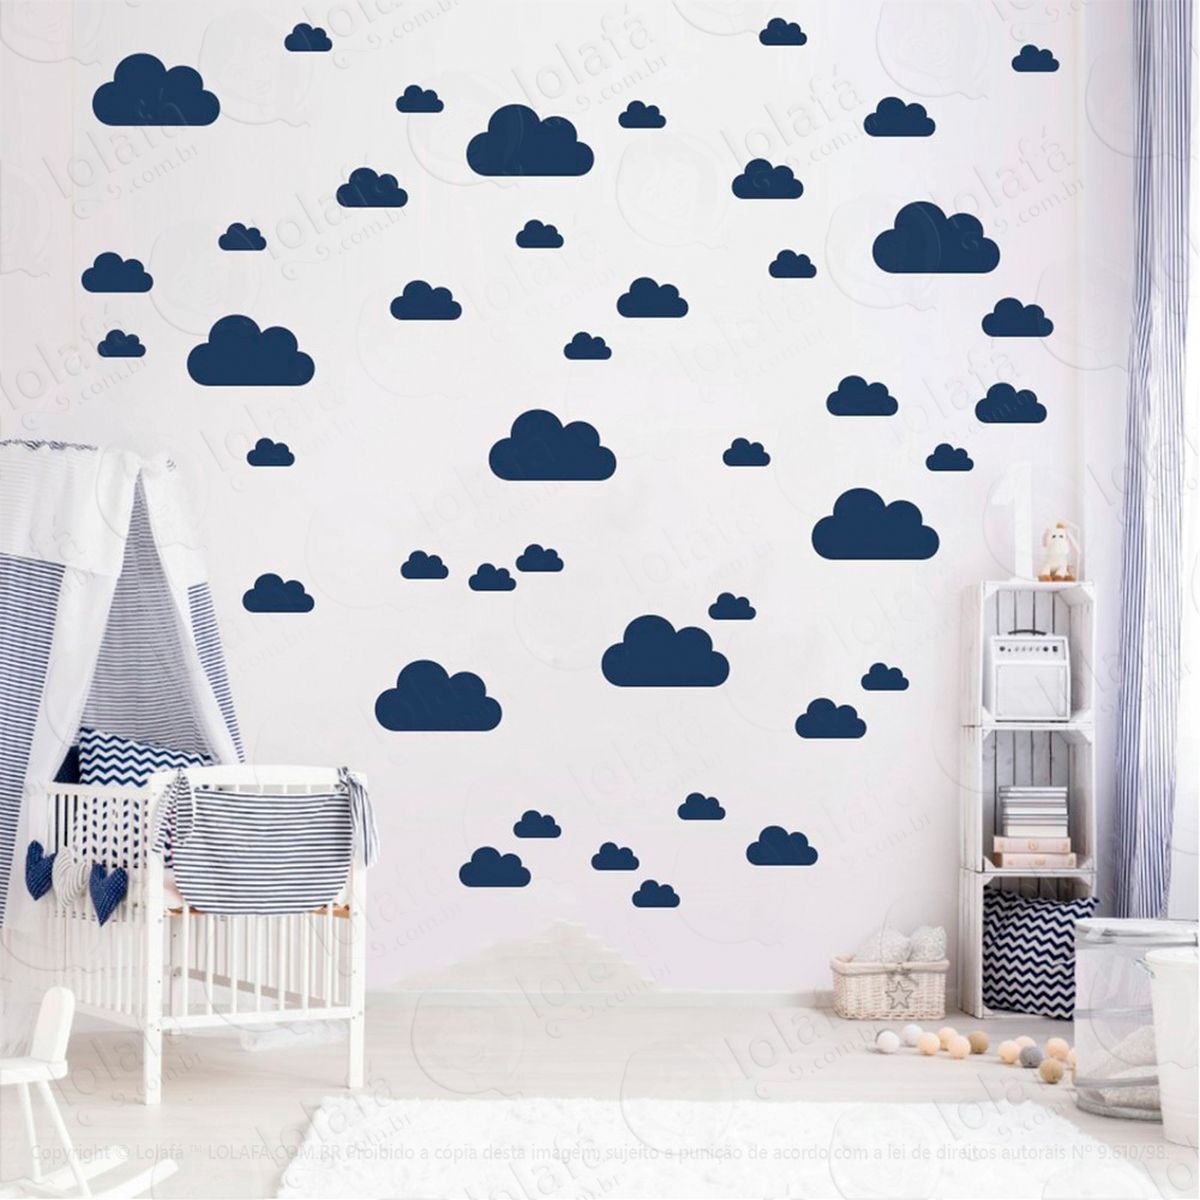 adesivos nuvens 78 peças adesivos para quarto de bebê infantil - mod:775